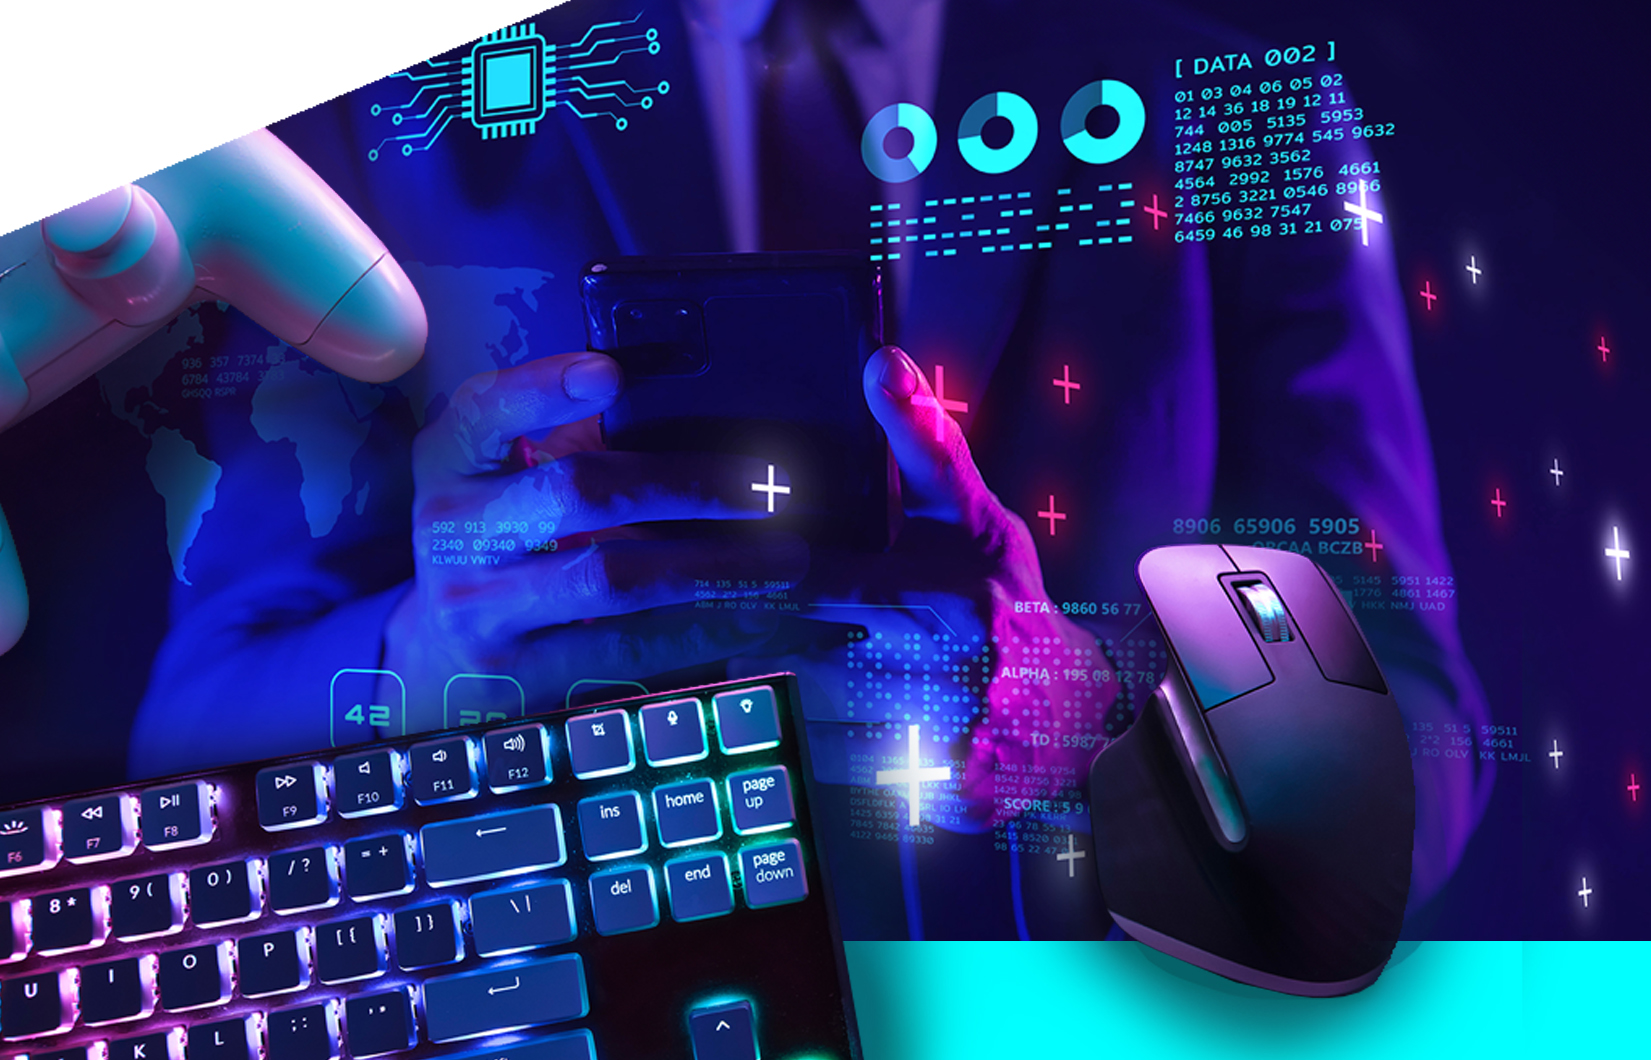 Imagem de um teclado e mouse com uma pessoa ao fundo, em tom azul e roxo